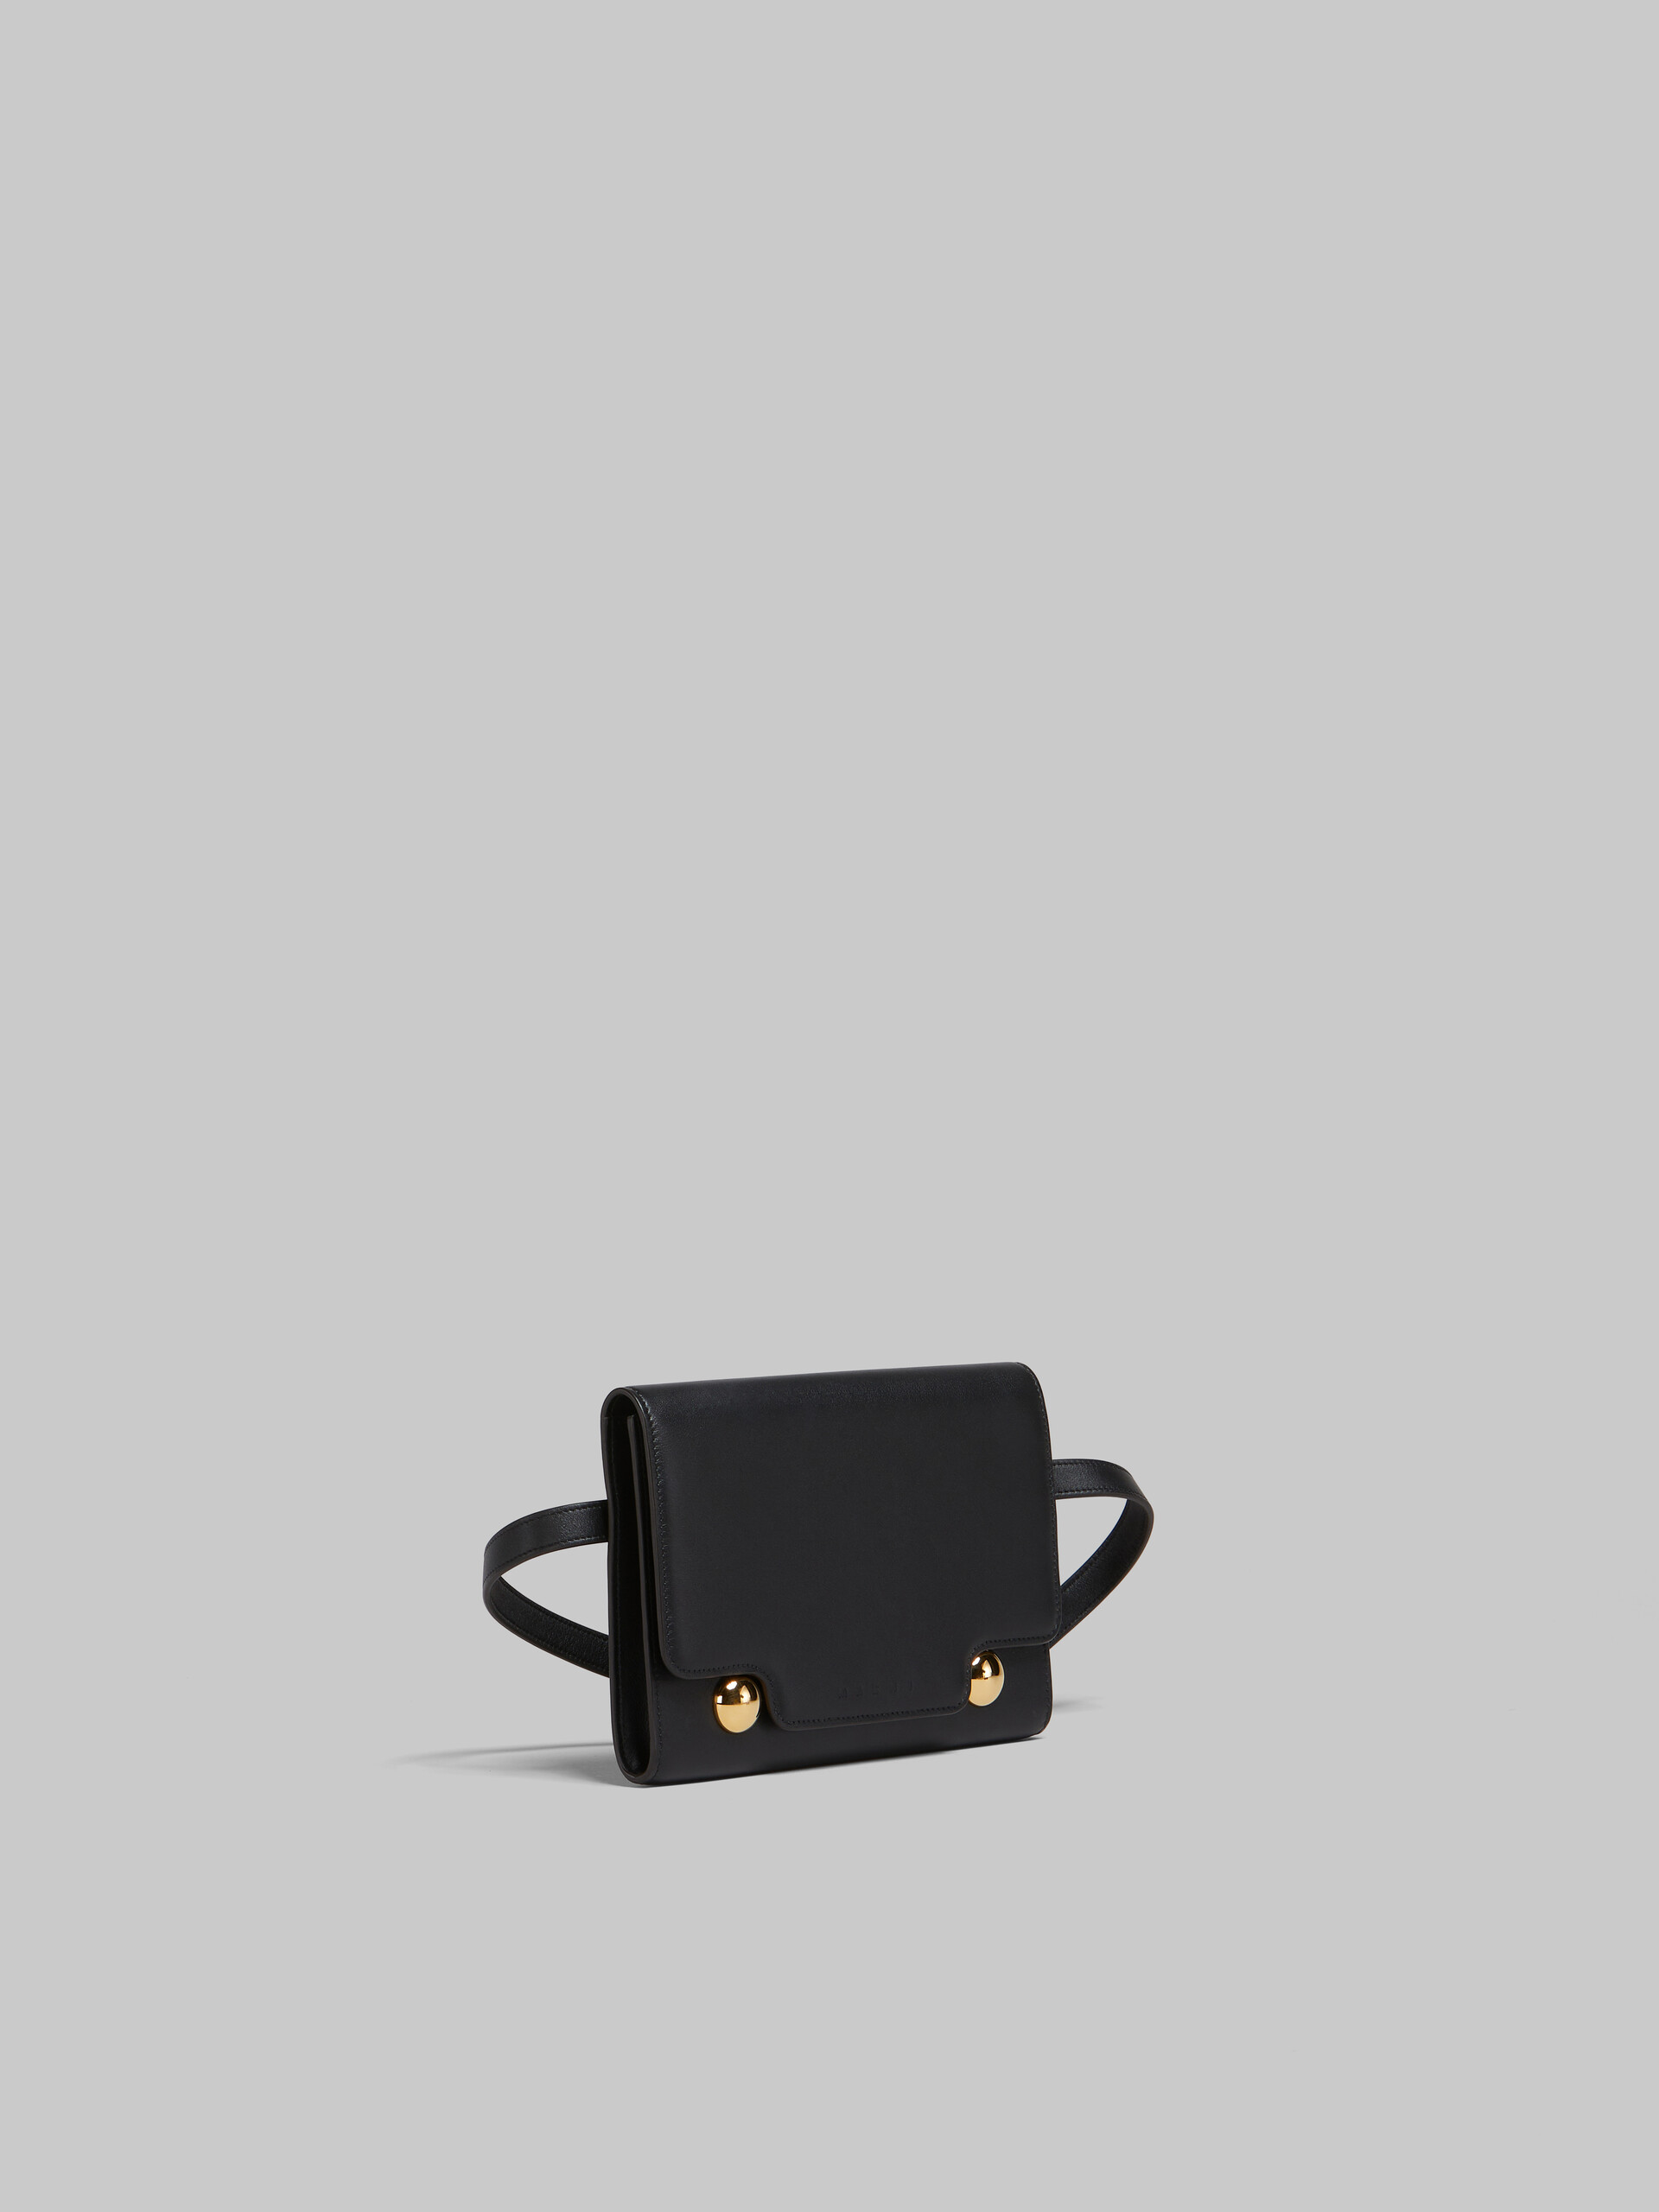 Black leather Trunkaroo bum bag - Belt Bag - Image 6